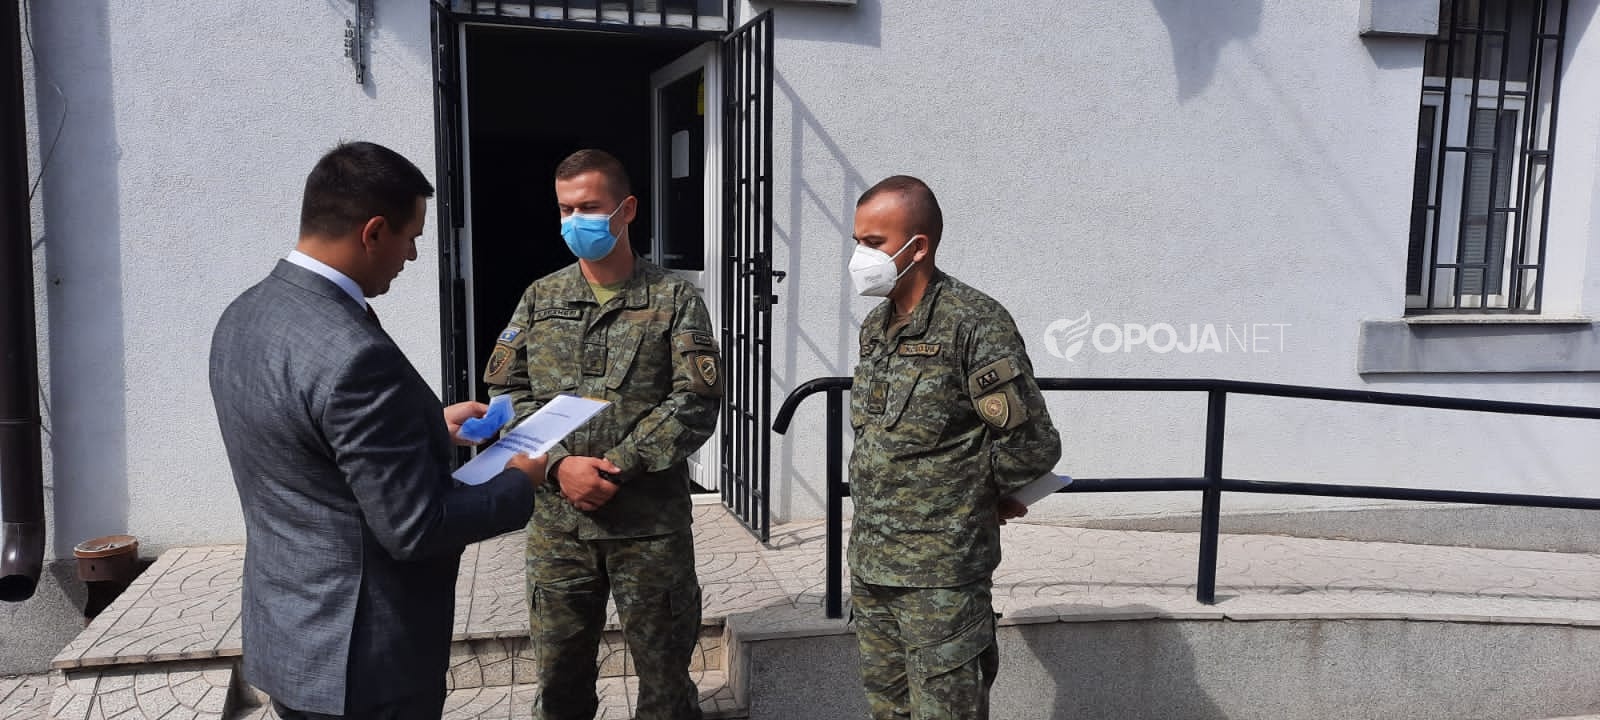 Ushtria e Kosovës furnizon me maska mbrojtëse shkollat në komunën e Dragashit